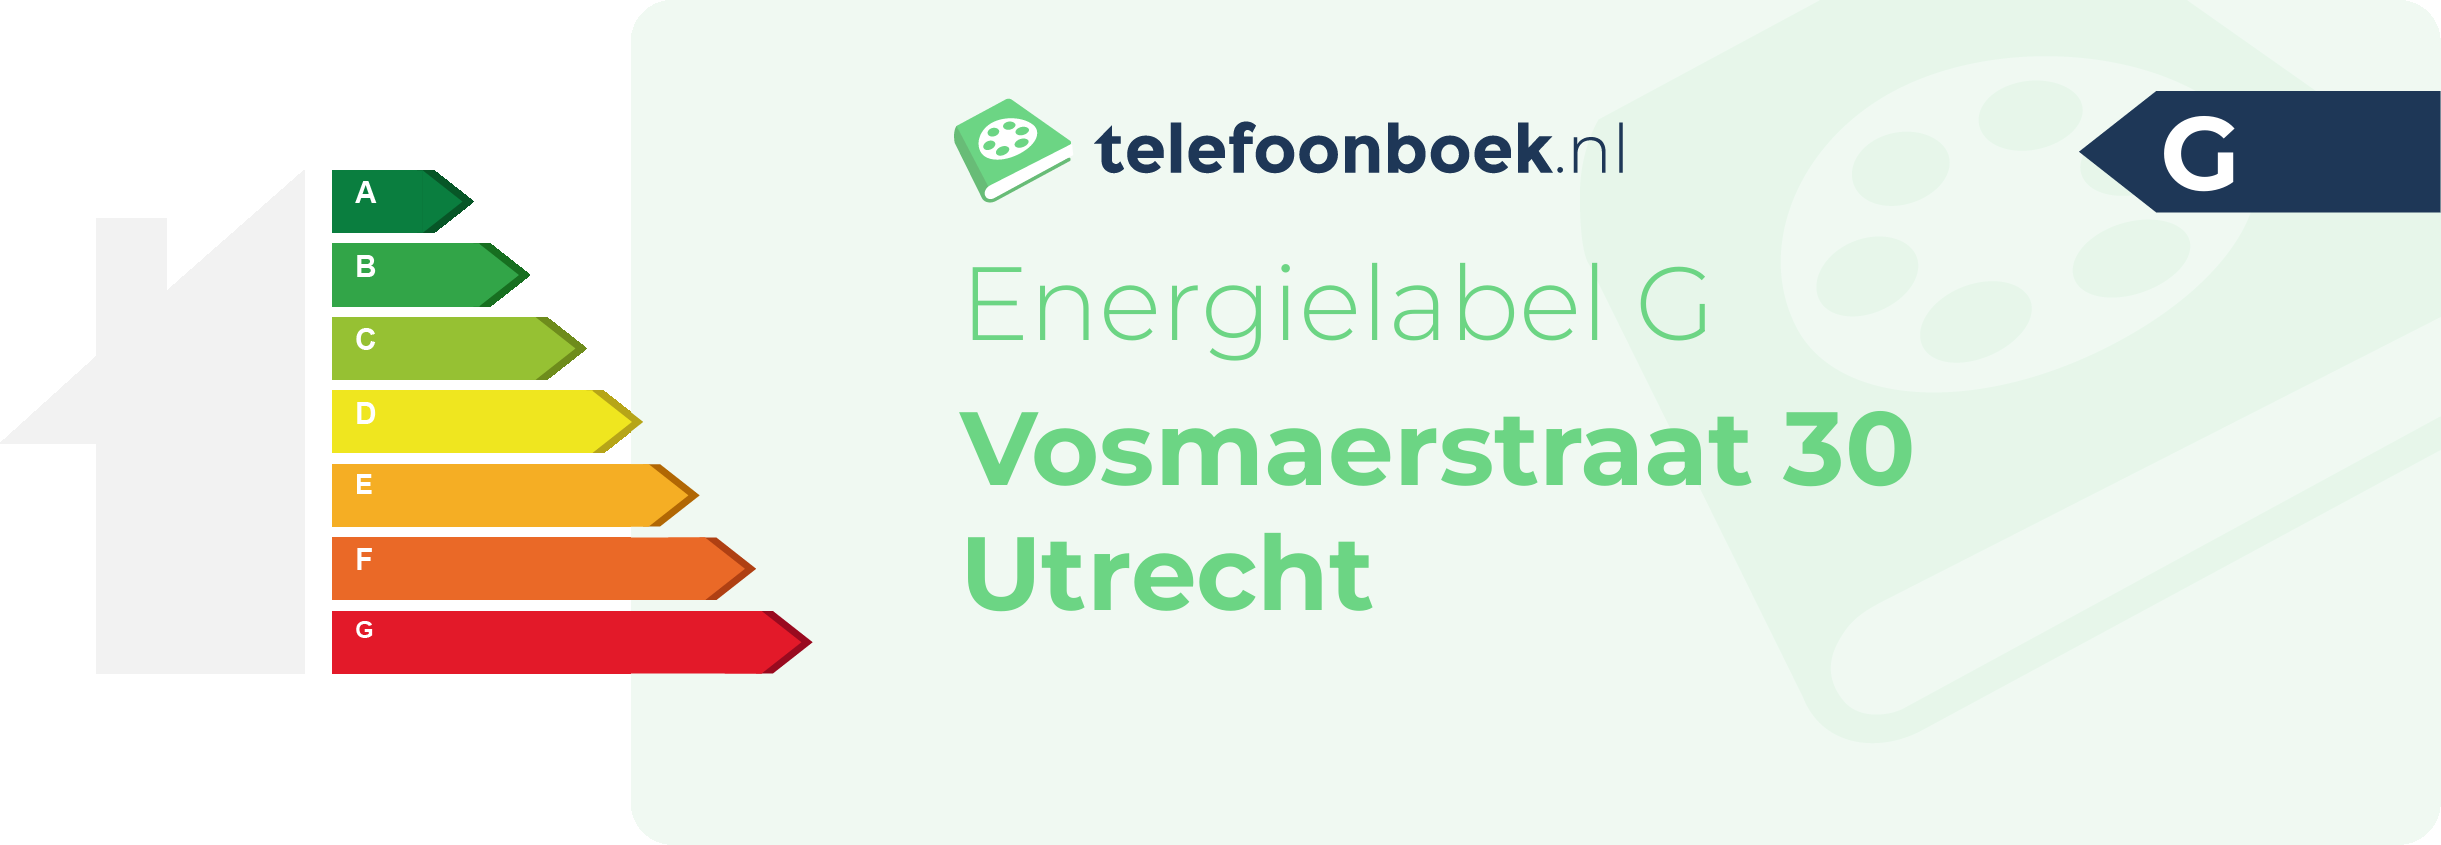 Energielabel Vosmaerstraat 30 Utrecht